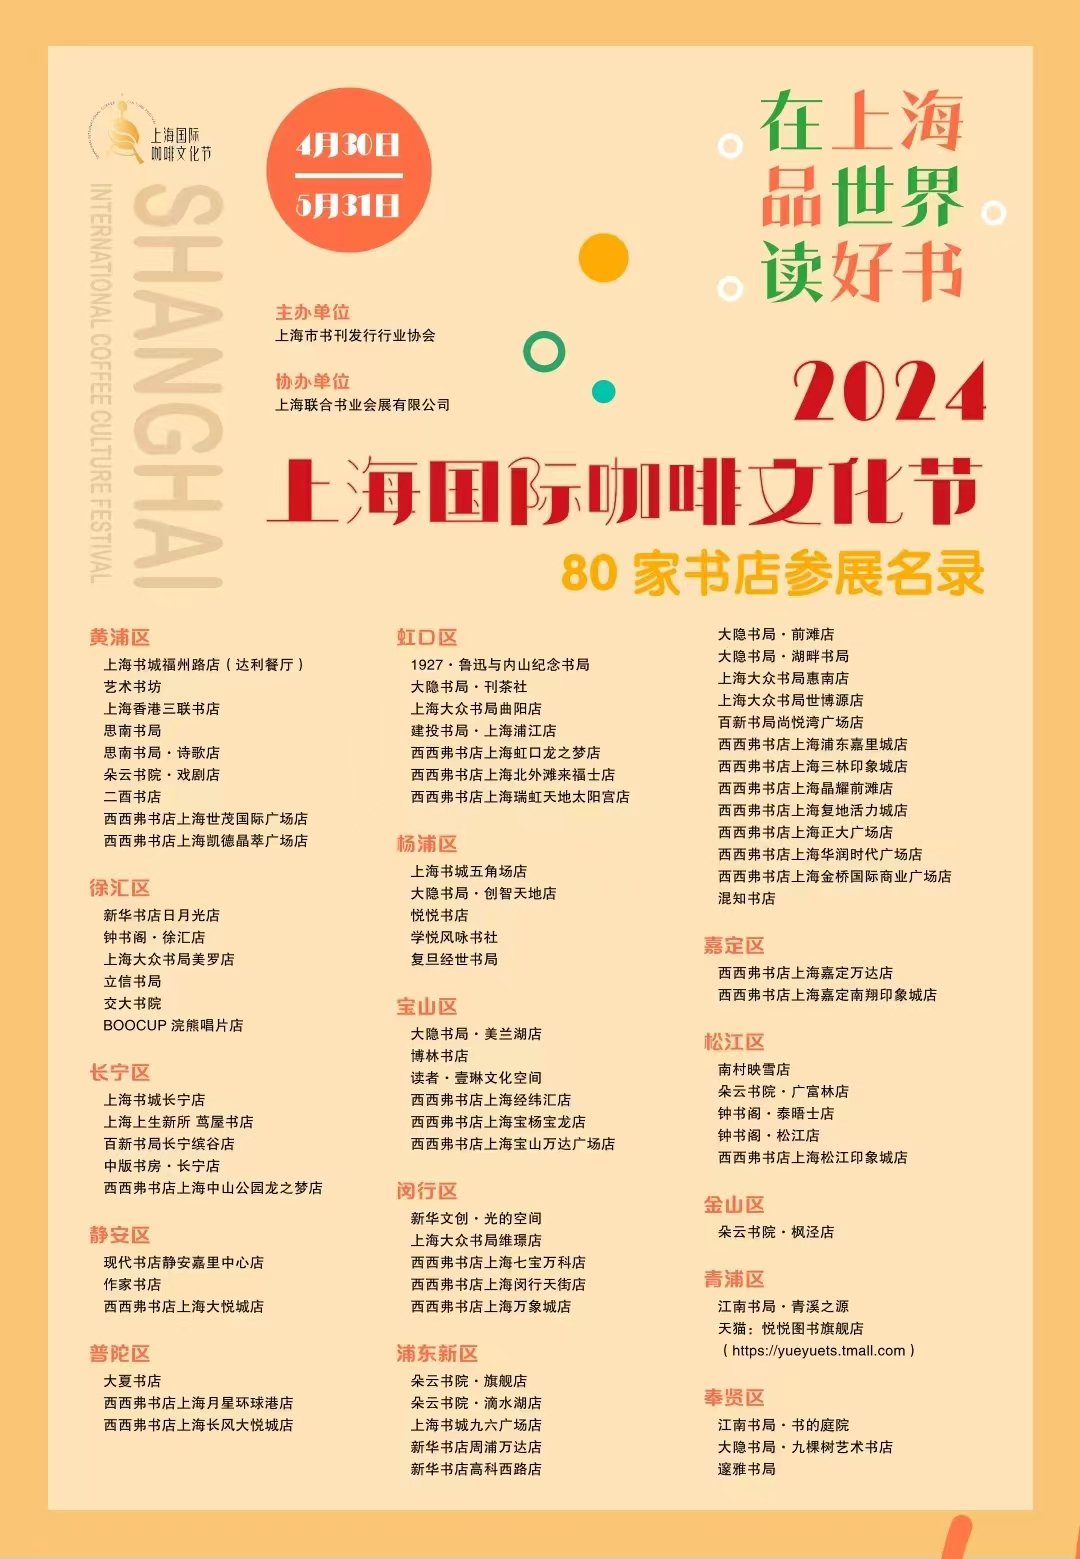 上海市书刊发行行业协会、上海联合书业会展有限公司联合全市80家品牌实体书店推出“在上海 品世界 读好书”系列活动